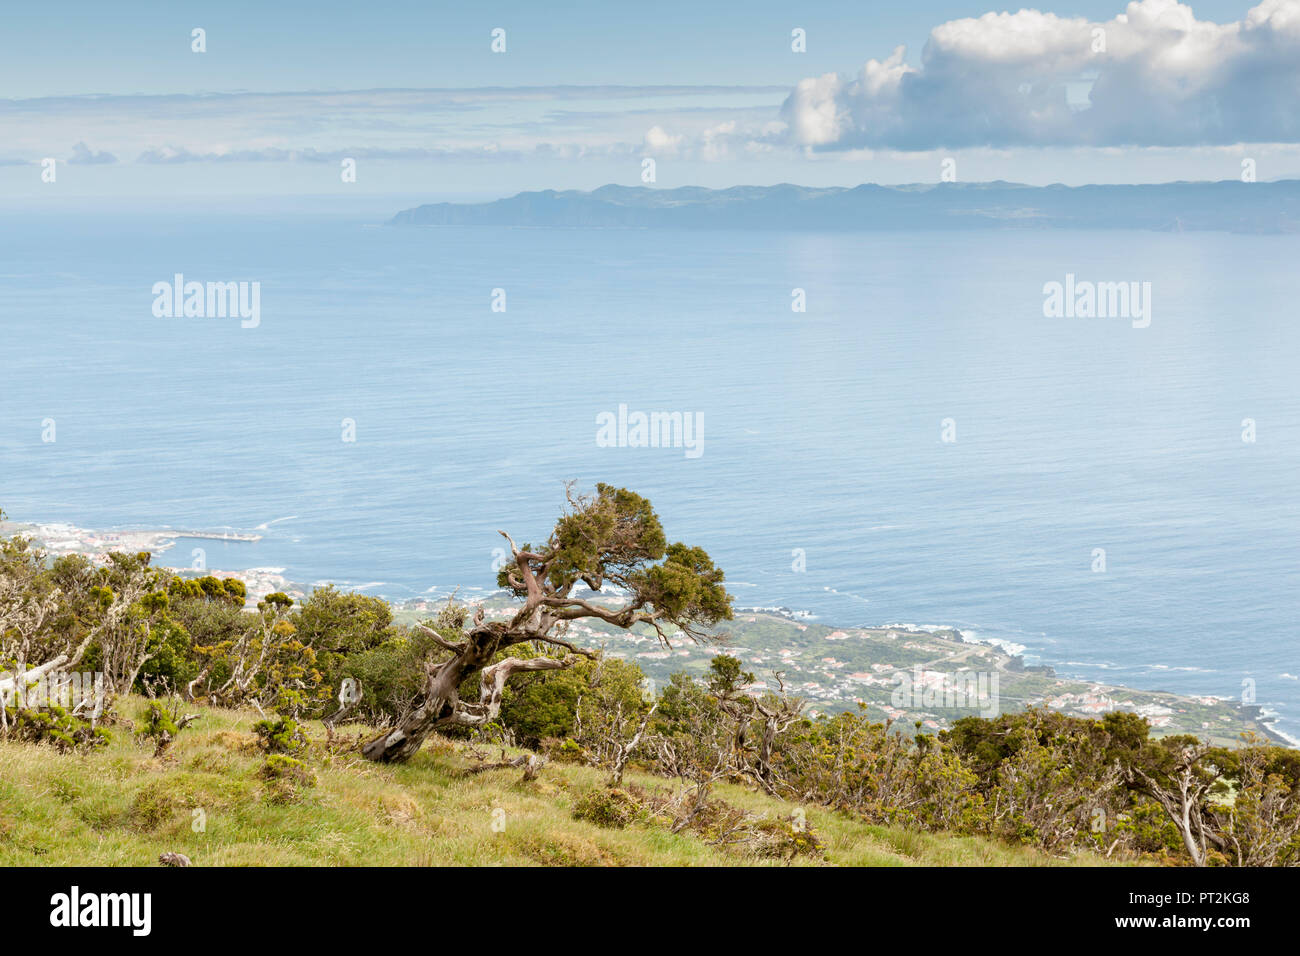 Ansicht von der Kante der Insel Pico, zugrunde liegende Küste mit dem windblown Bäume und der benachbarten Insel Sao Jorge Stockfoto